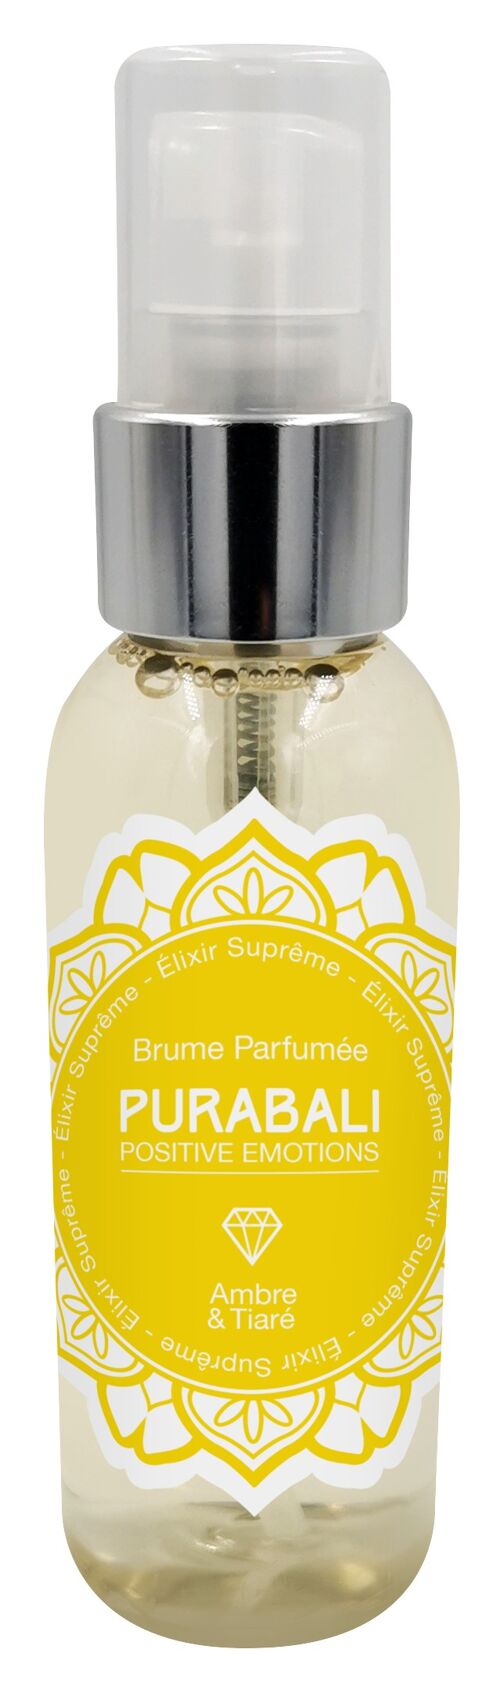 Brume Parfumée Corps et Cheveux – Ambre & Tiaré parfum 100 % naturel